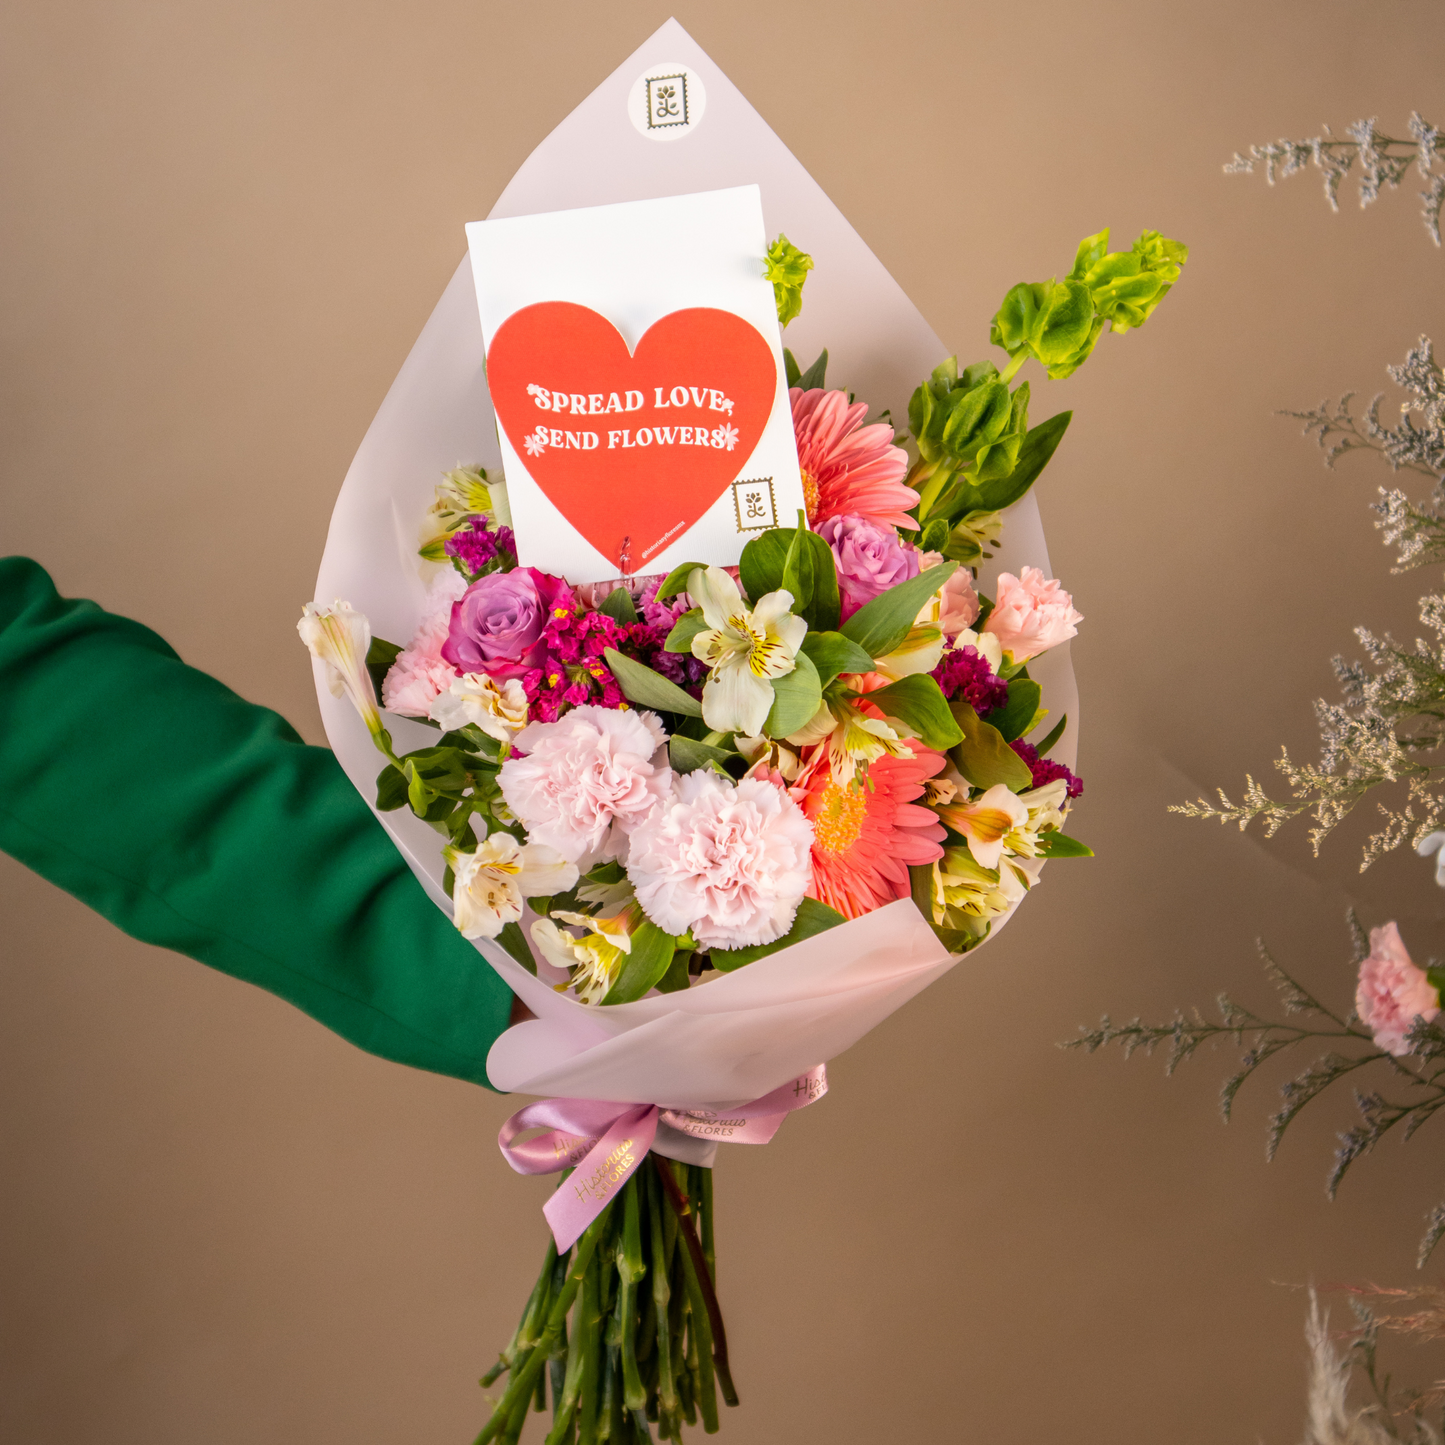 Bouquet Spread Love Send Flowers